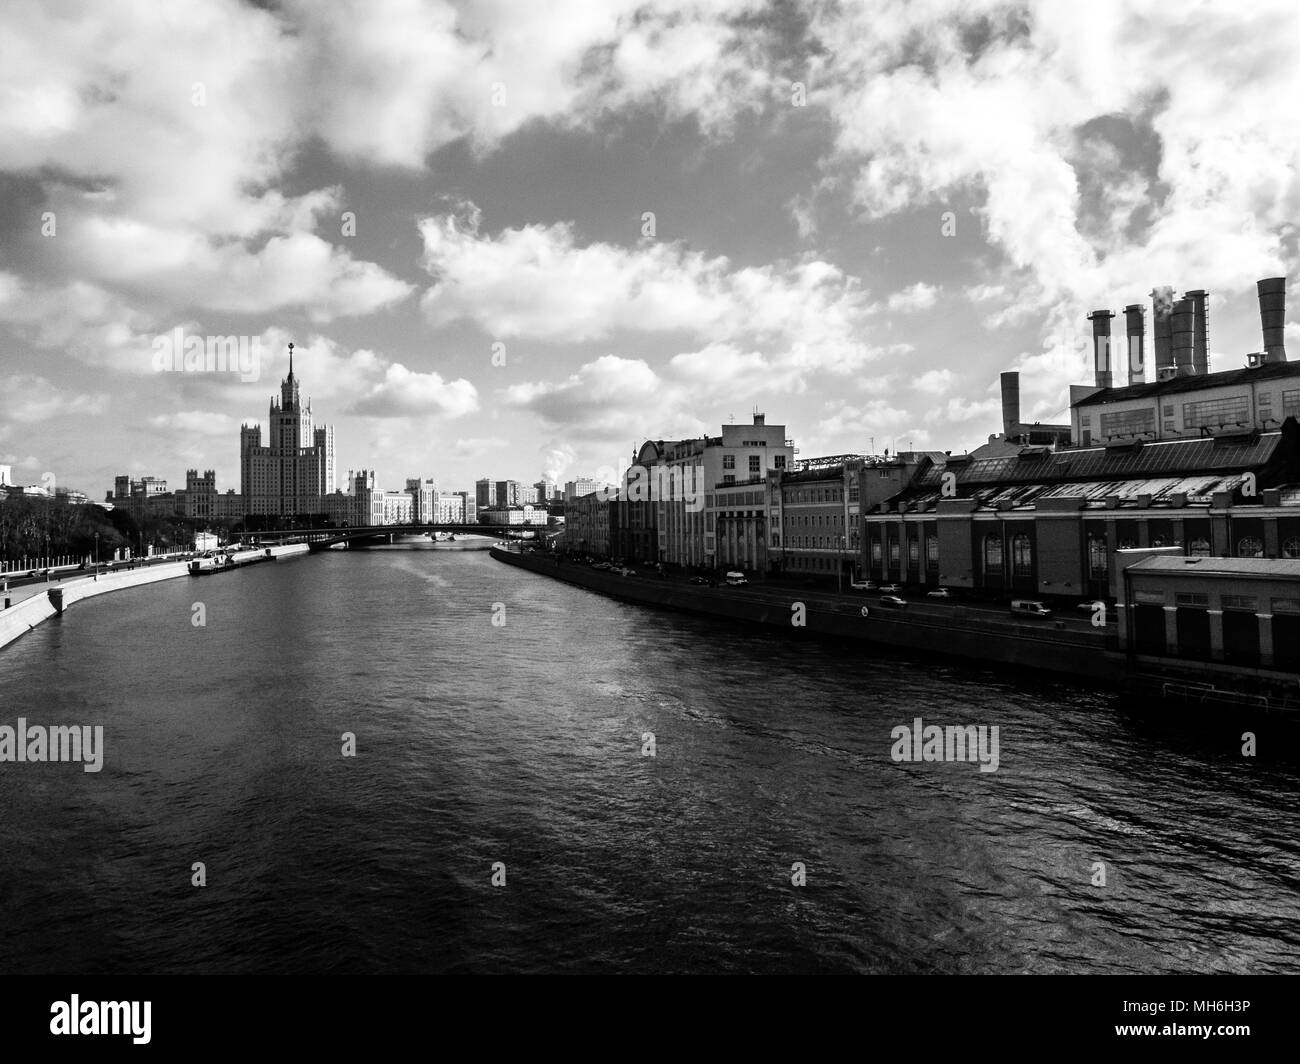 Voir d'skyscapter sur la promenade de la rivière de Moscou, Russie. Image en noir et blanc Banque D'Images